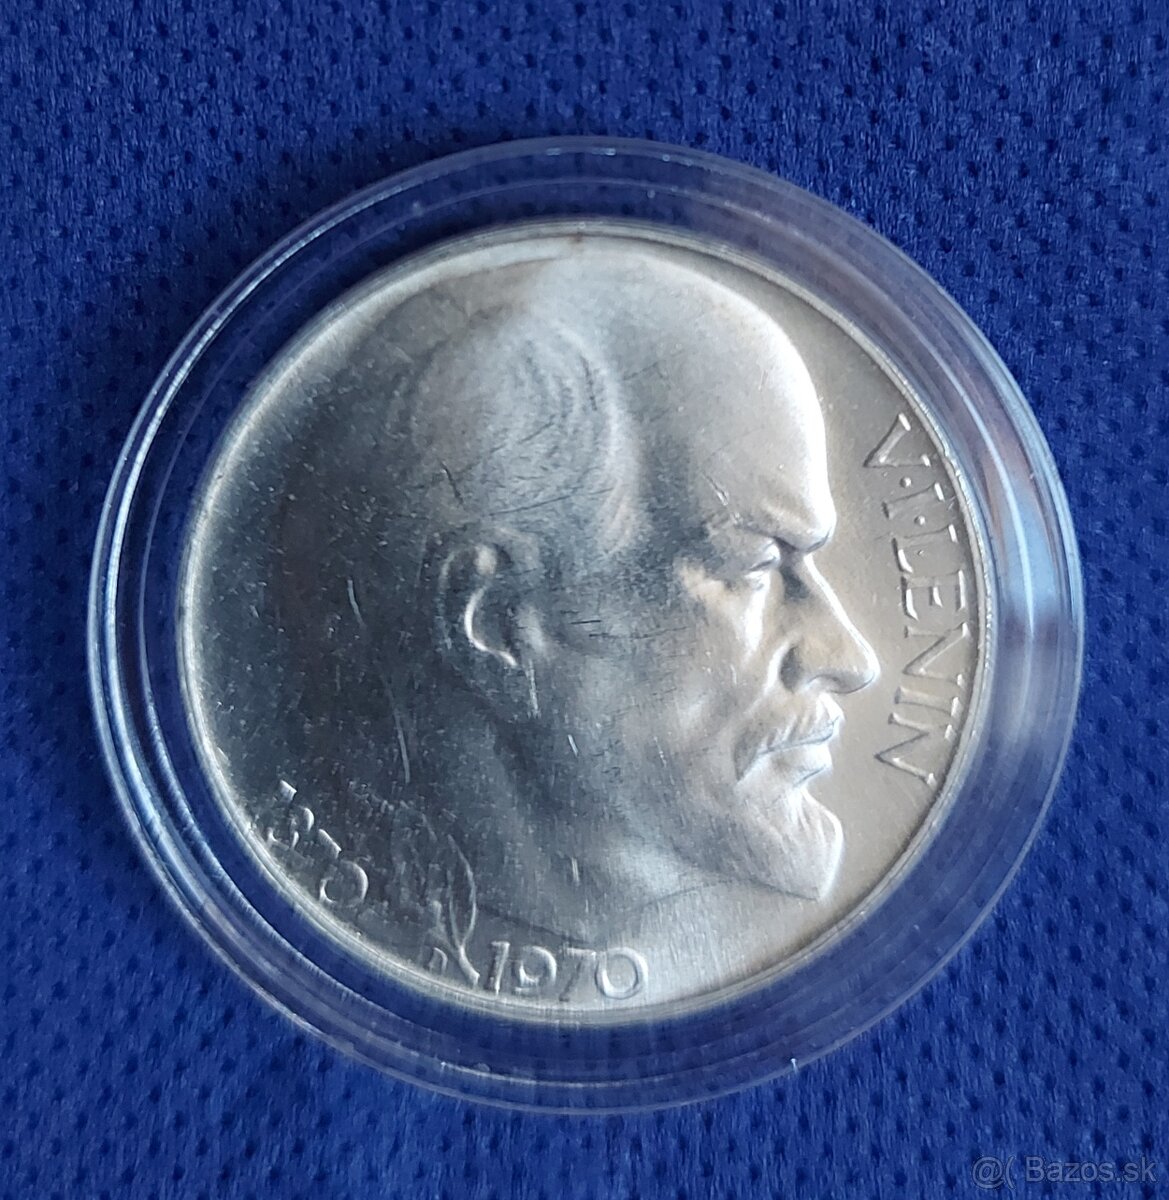 Strieborná pamätná minca 50Kčs,  1970, V. I. LENIN, BK